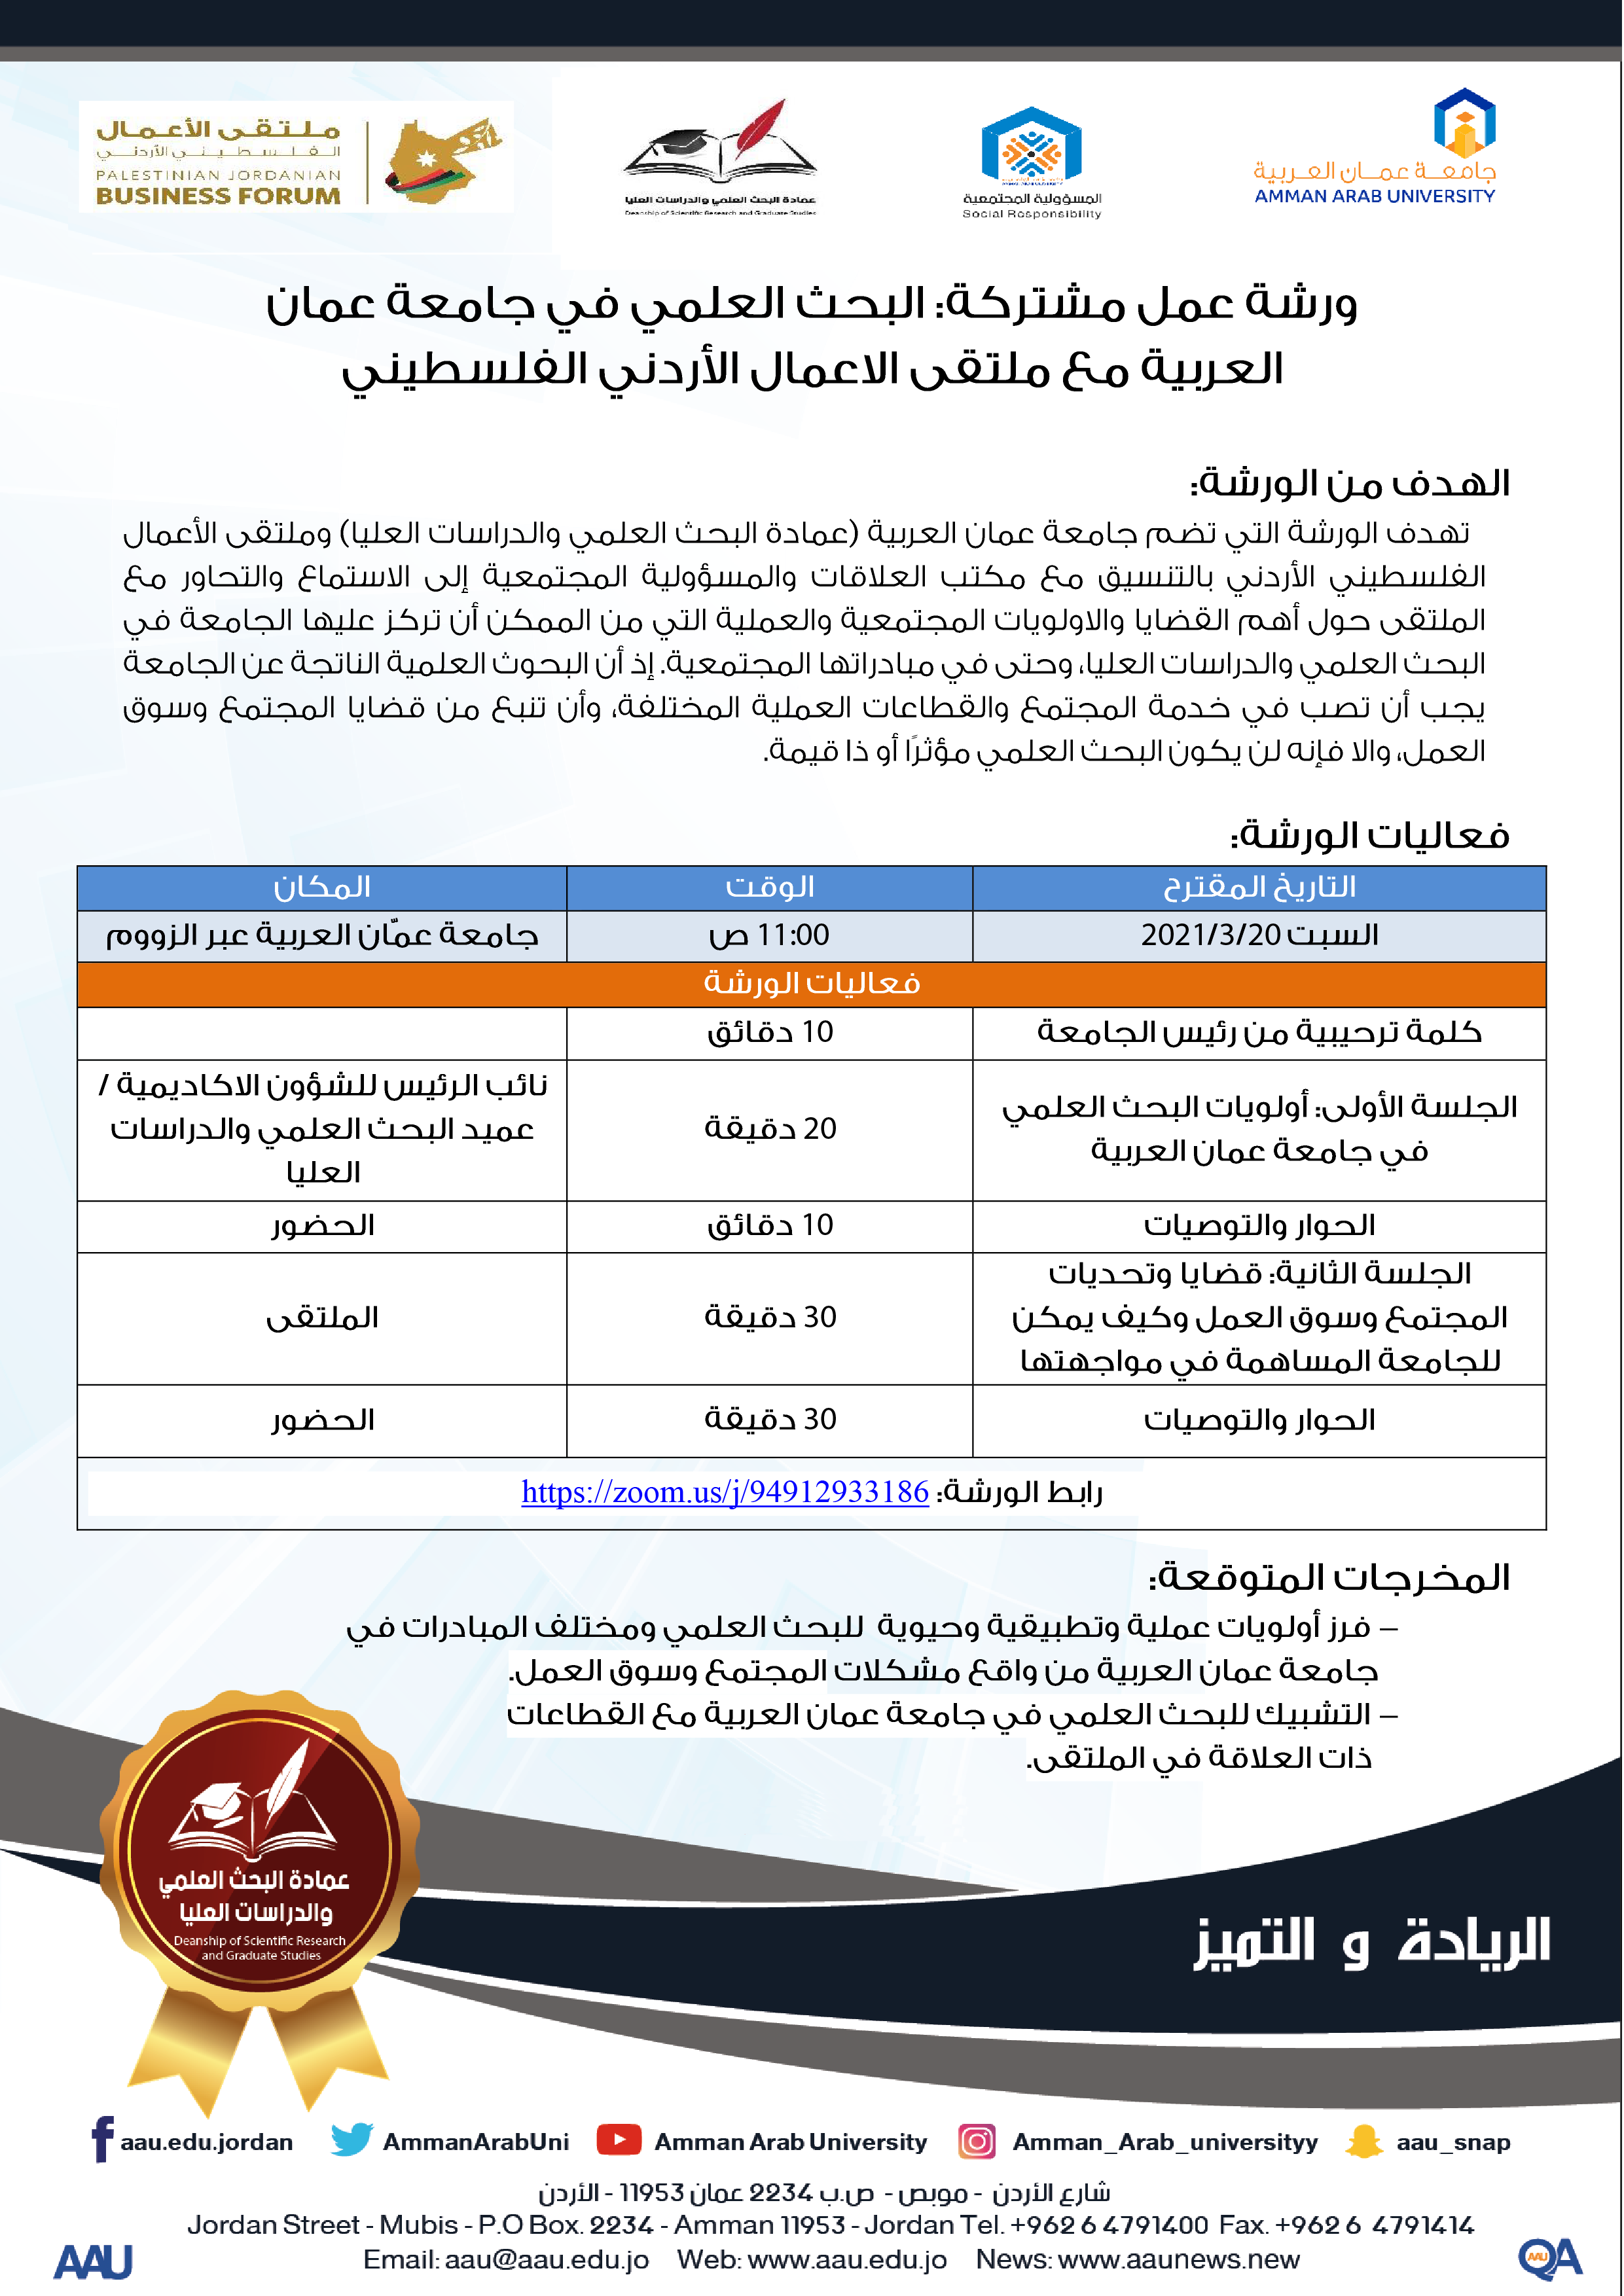 اعلان - ورشة عمل مشتركة، البحث العلمي في جامعة عمان العربية مع ملتقى الاعمال الاردني الفلسطيني